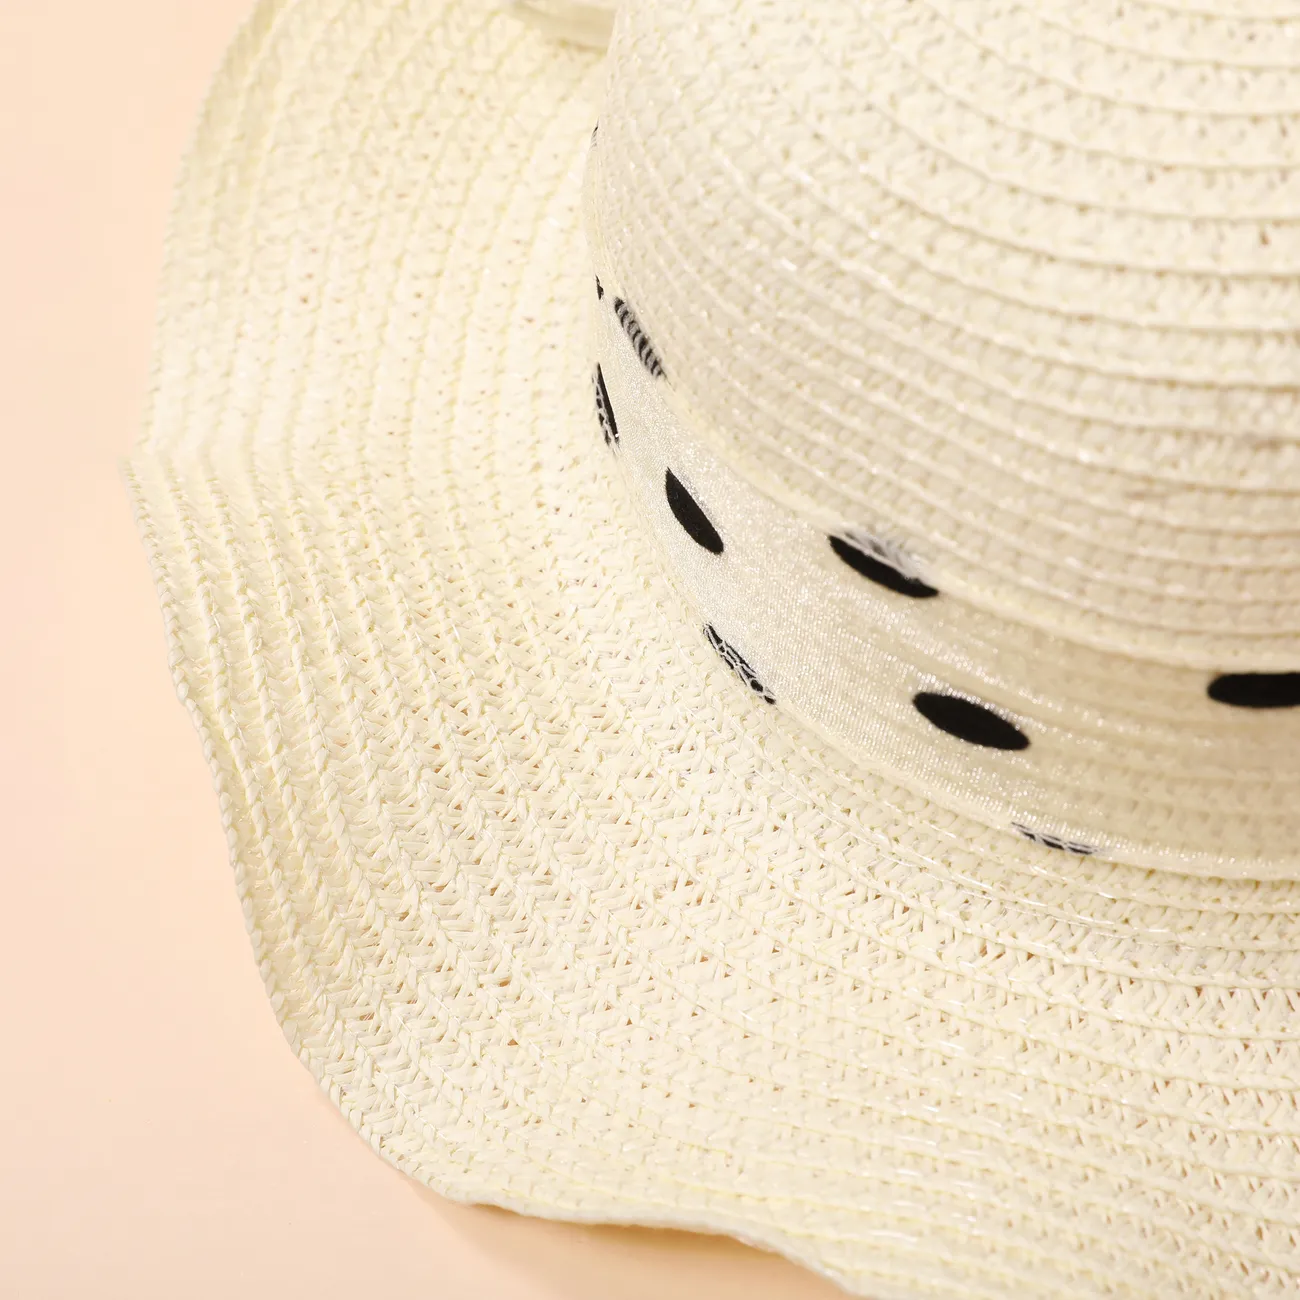 Sommerlicher Mädchen-Strohhut mit gepunktetem Band für Strand- und Sonnenschutz, 2-5 Jahre Cremeweiß big image 1